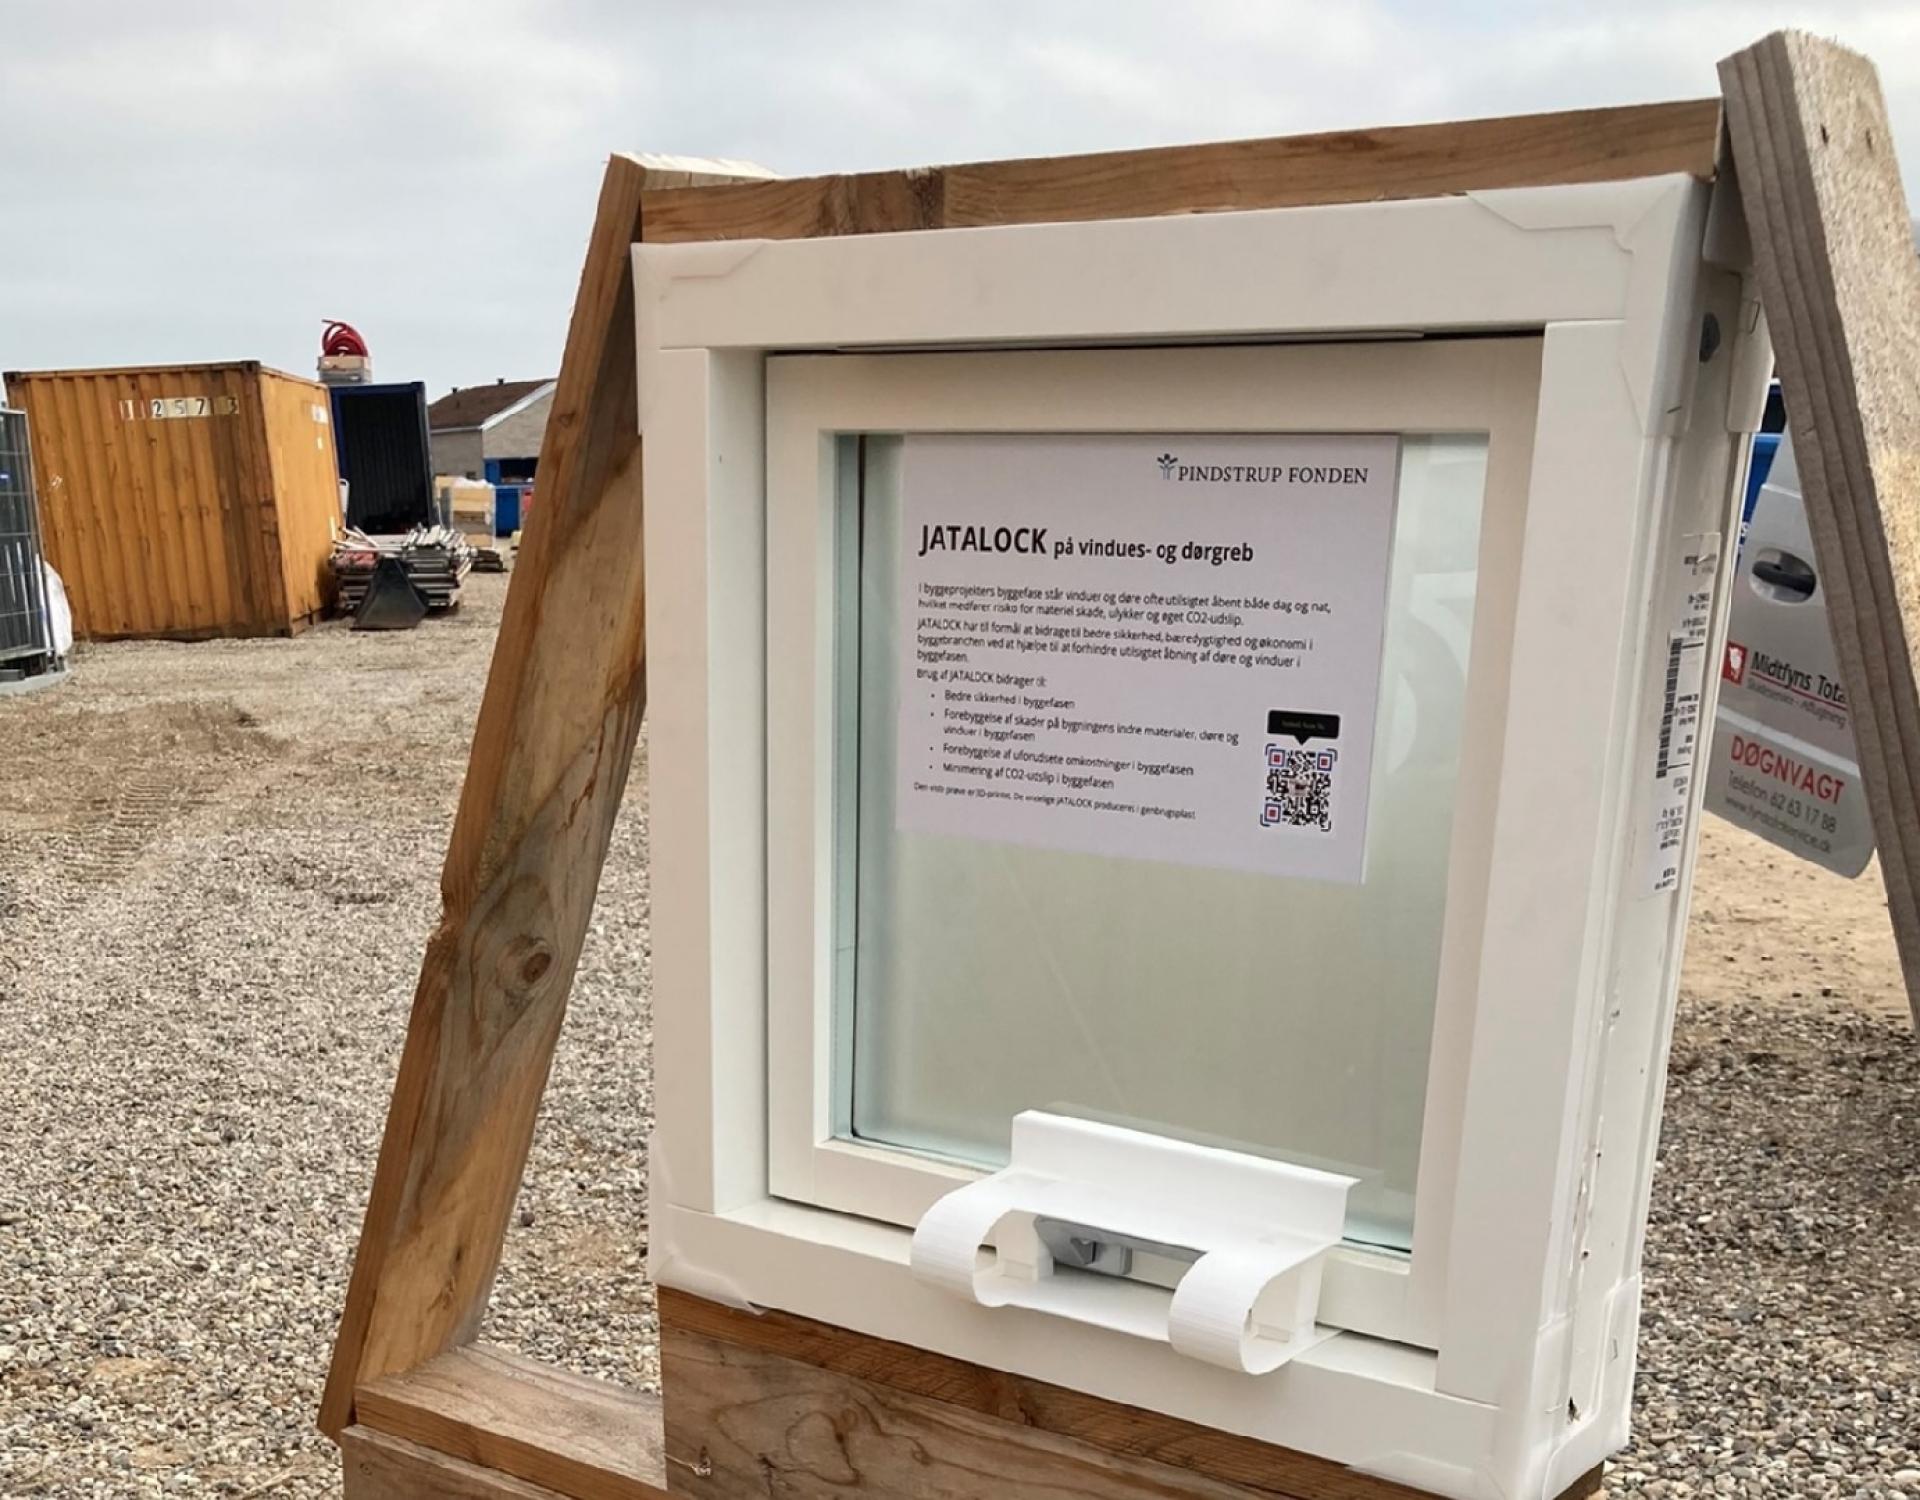 Den patenterede sikringsanordning Jatalock er med som pilotprojekt på det cirkelformede byggeri i Strib. Produktet holder døre og vinduer lukkede på byggepladsen indtil aflevering.